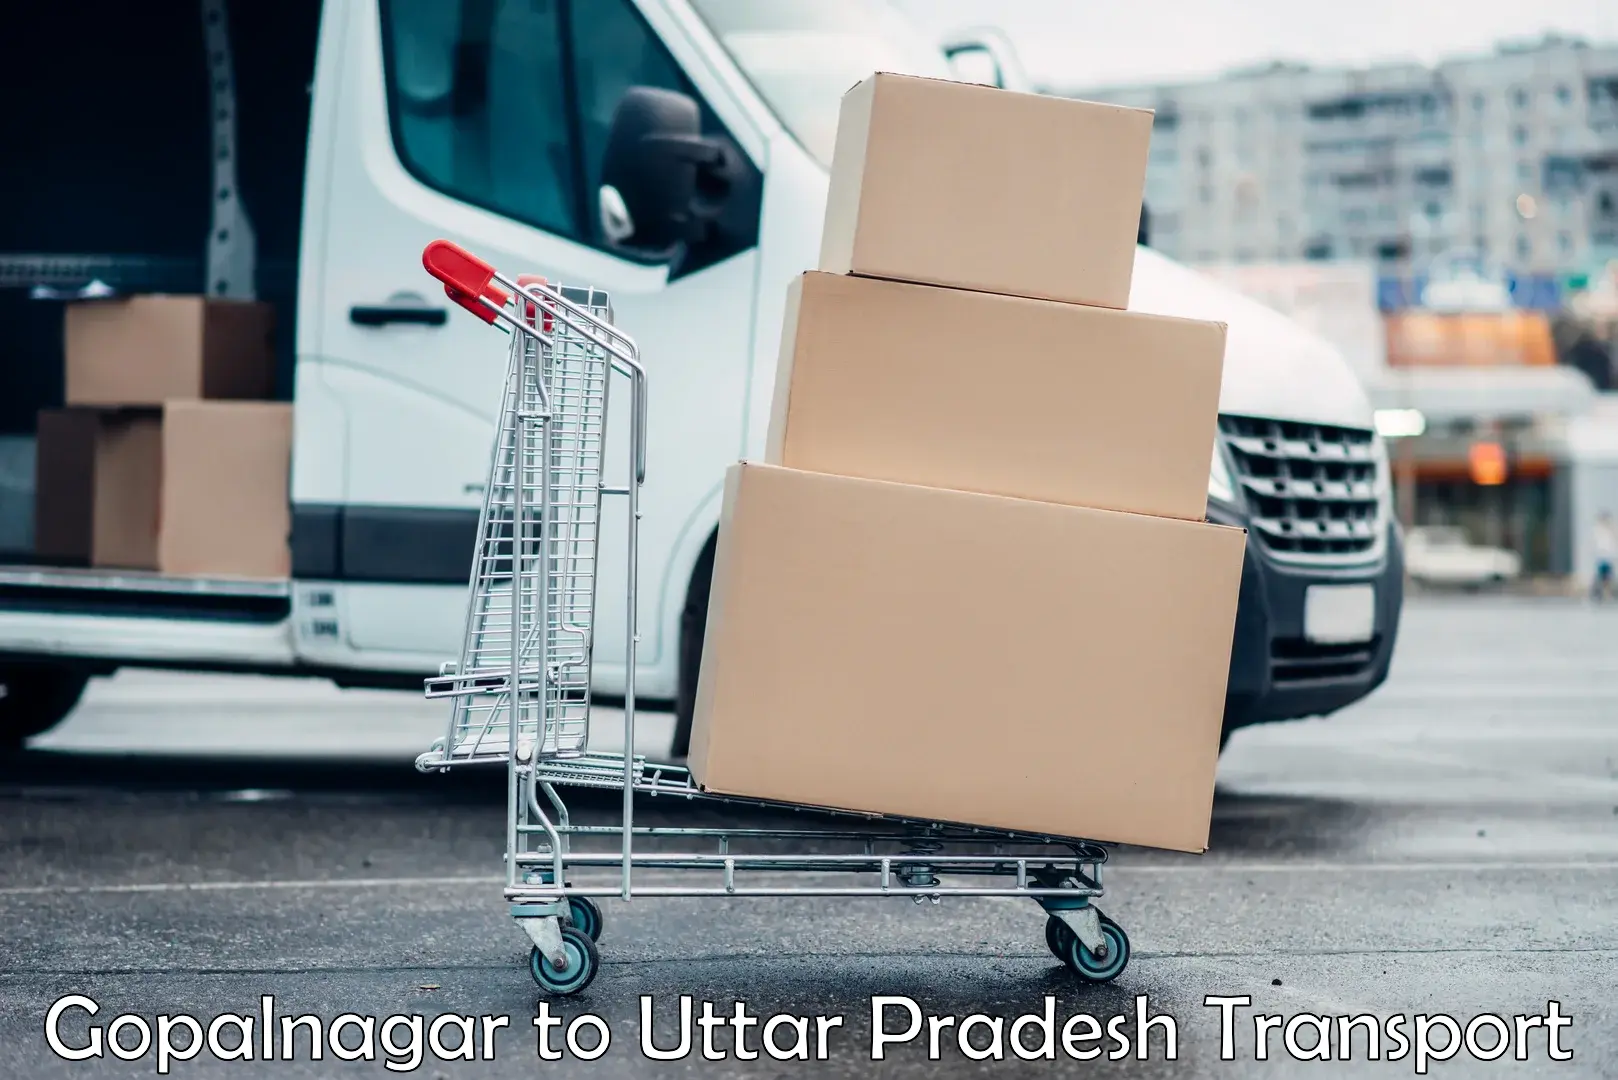 Package delivery services Gopalnagar to Uttar Pradesh